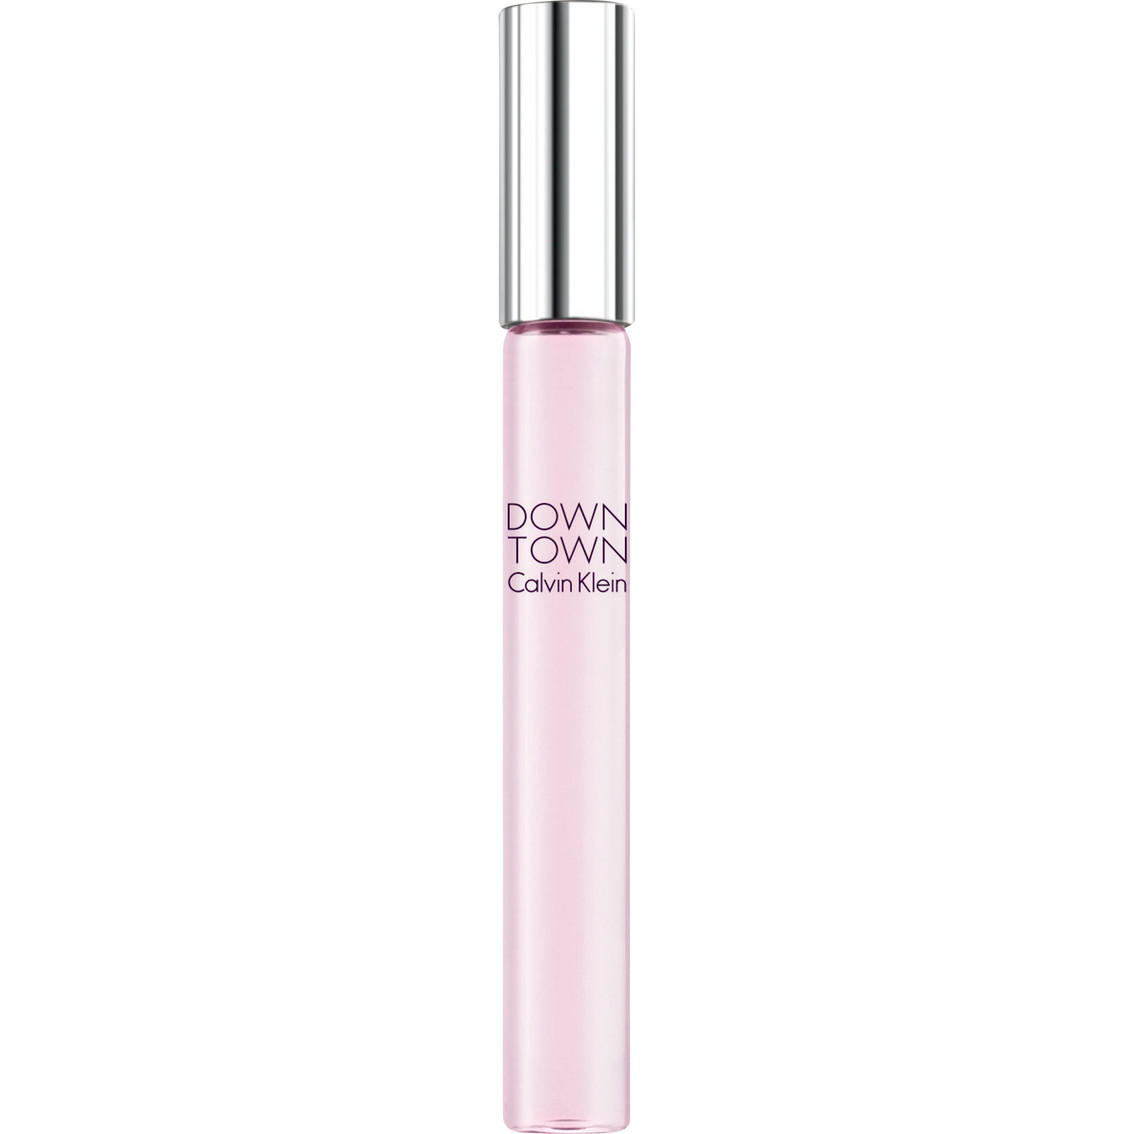 Calvin Klein Down Town Perfume Luxe Travel